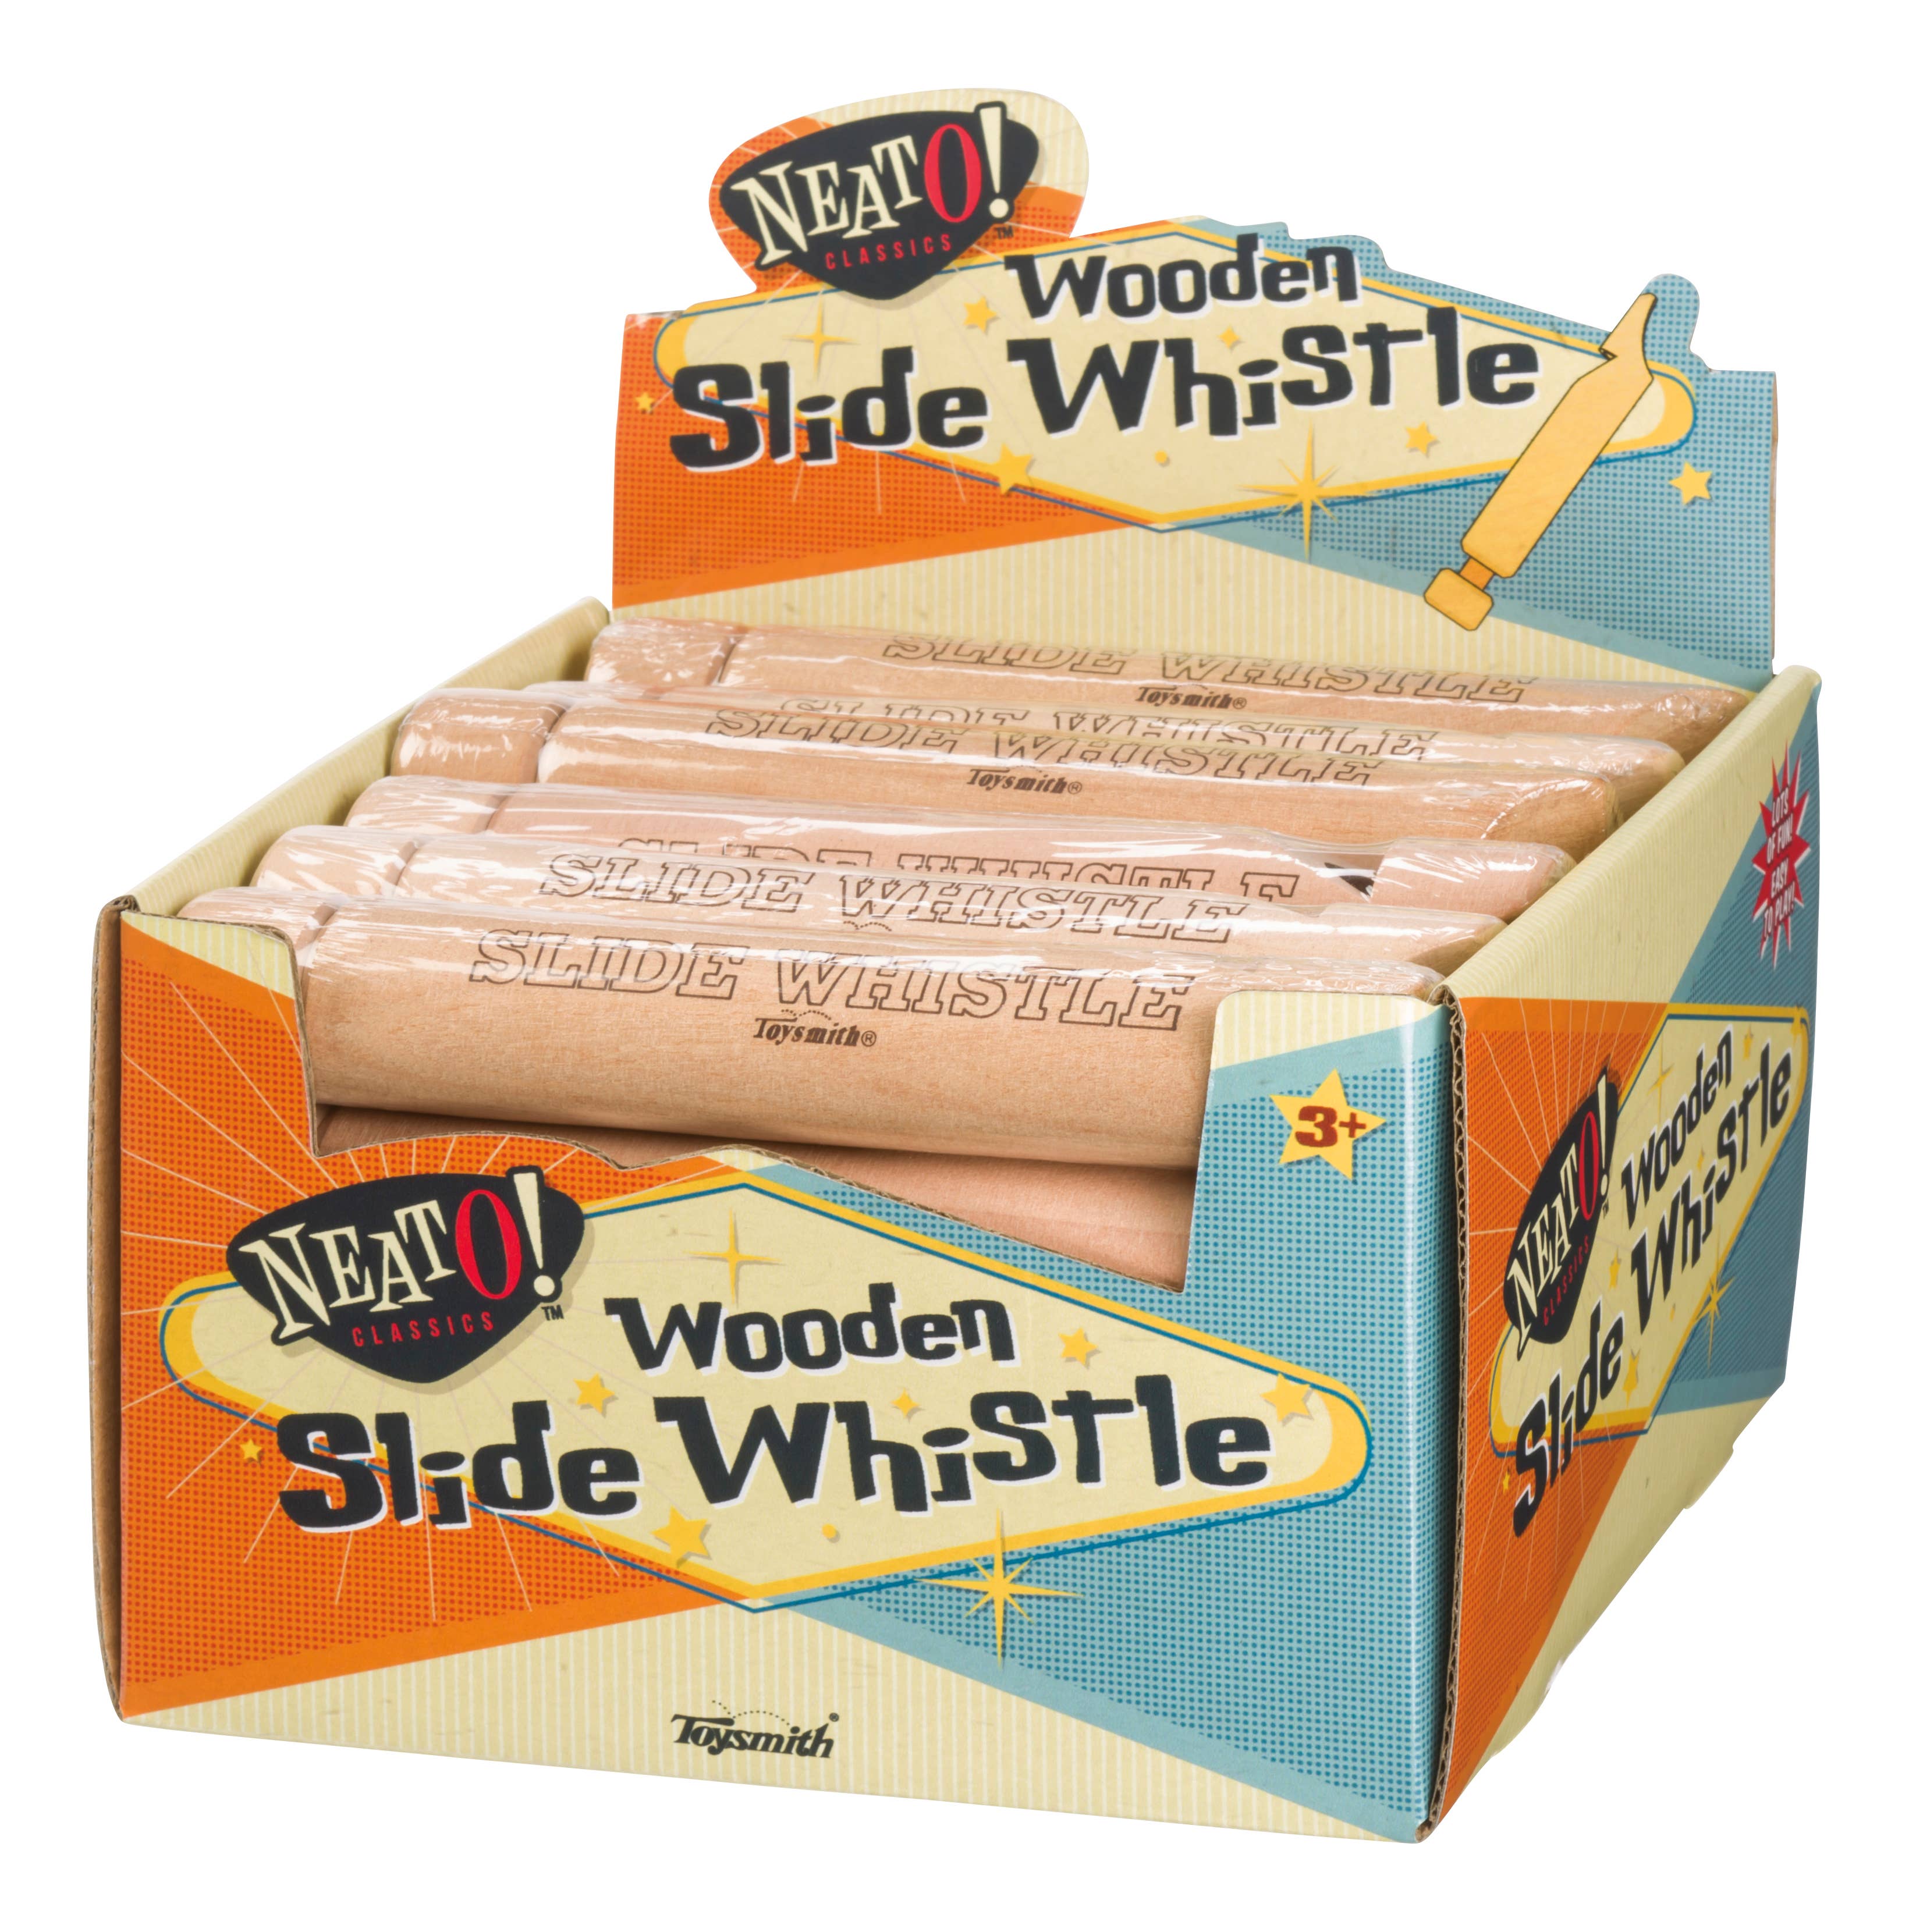 Wooden Slide Whistle, 6-1/2